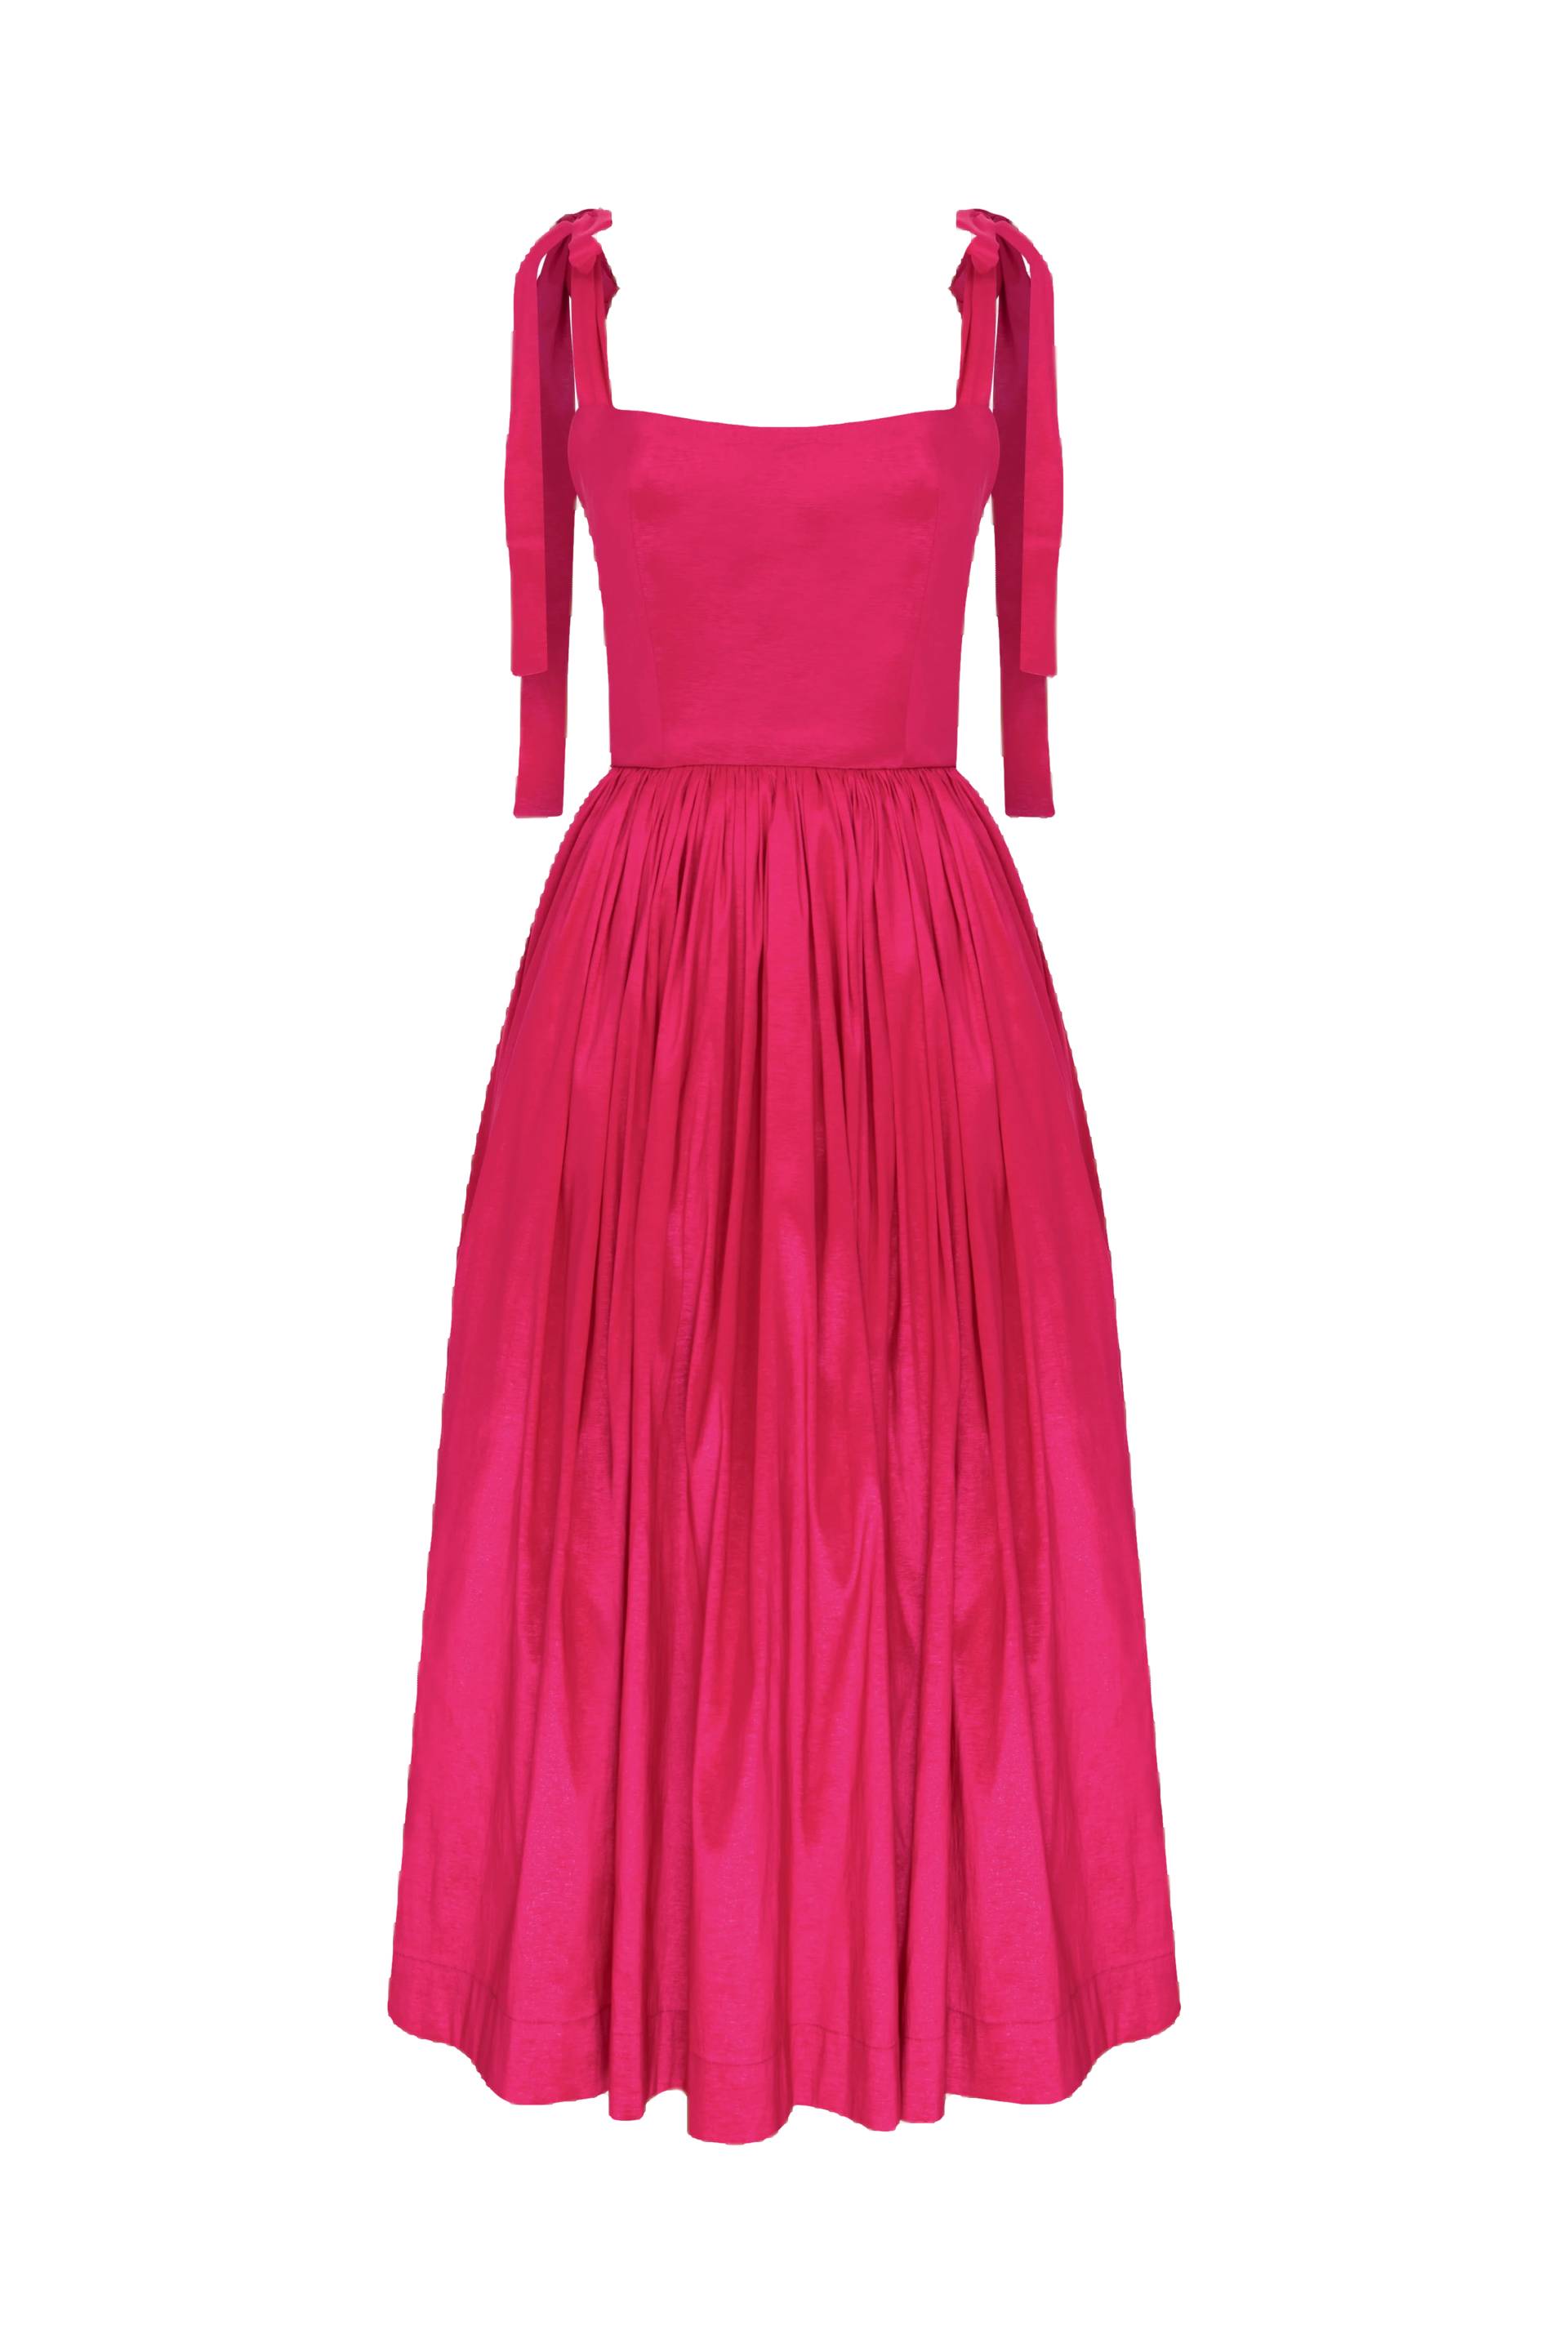 Sibby Midi Dress in Pink von Nazli Ceren